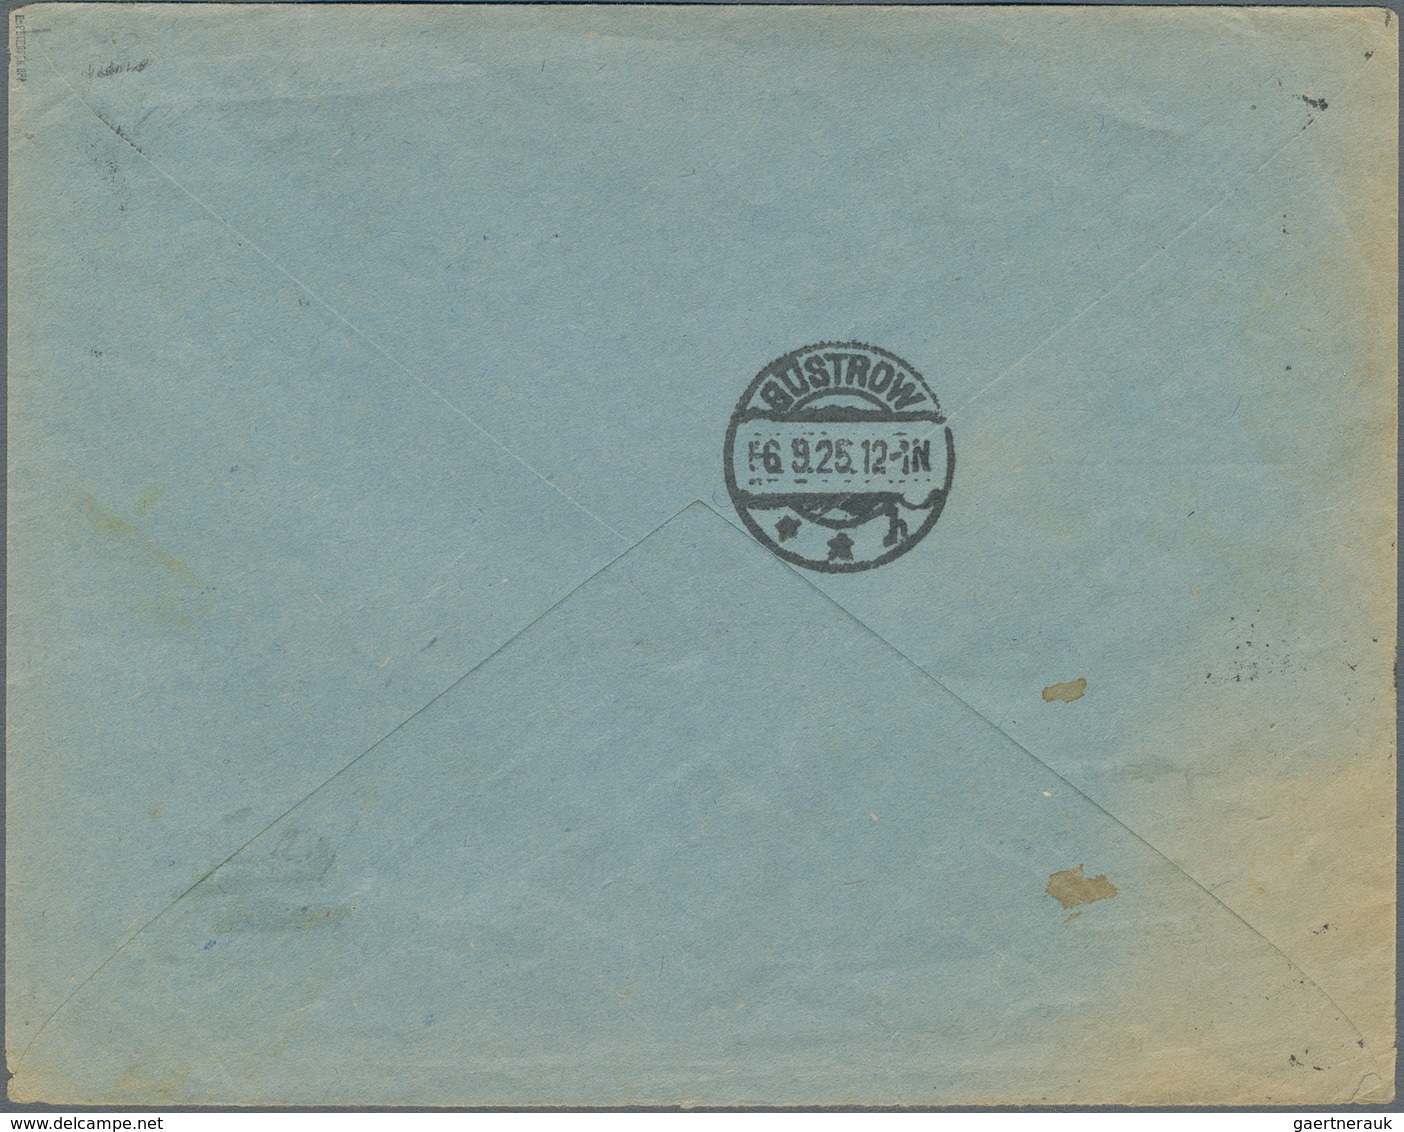 Memel: 1923/1924, Partie mit 4 Briefen, dabei 7-Farben-Frankatur (Mi.ex 169/180) mit MiNr.177 u. 180